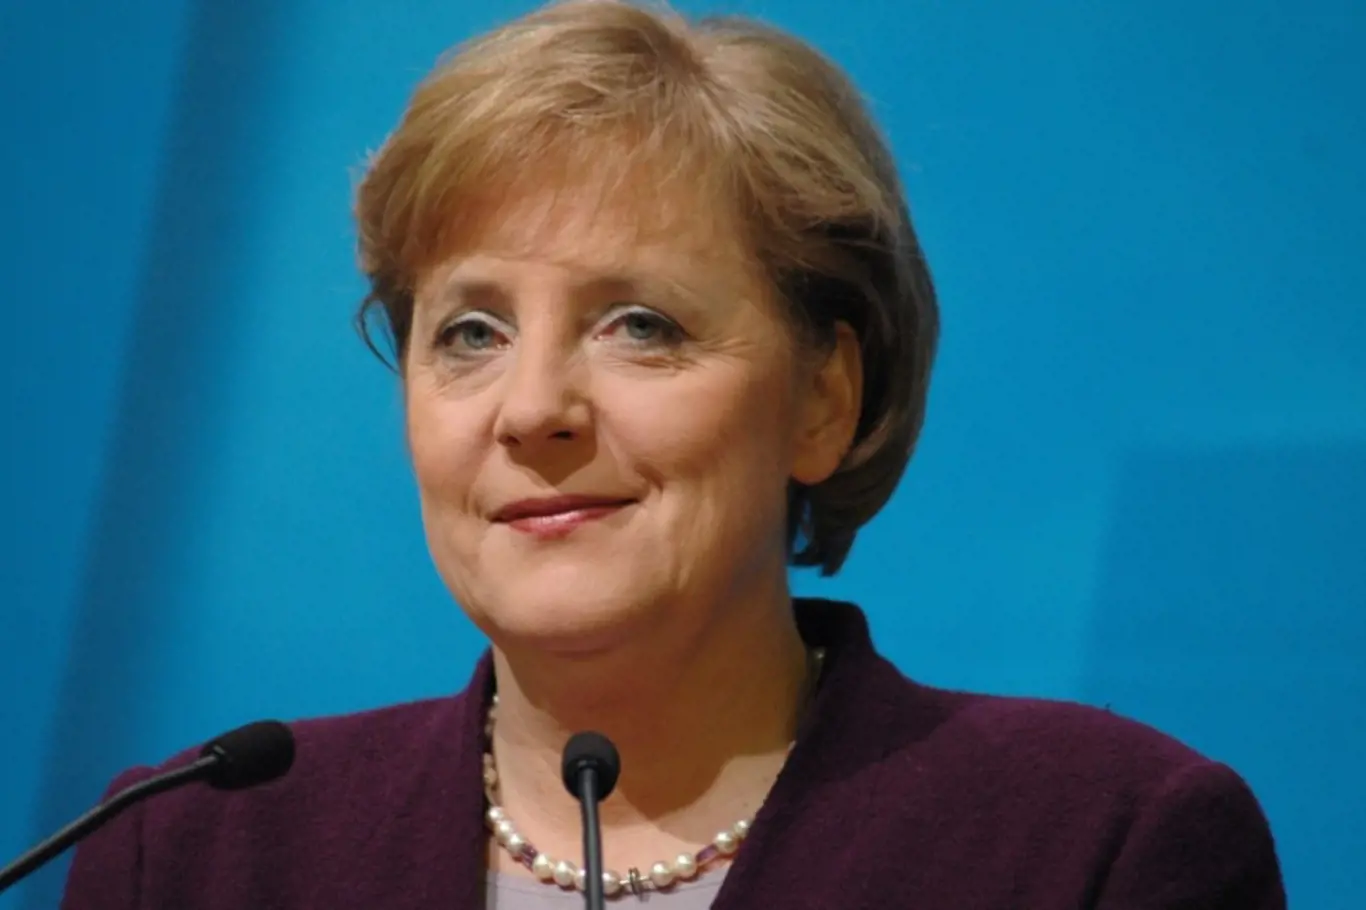 Angela Merkelová v prosinci 2005 jako čerstvá kancléřka